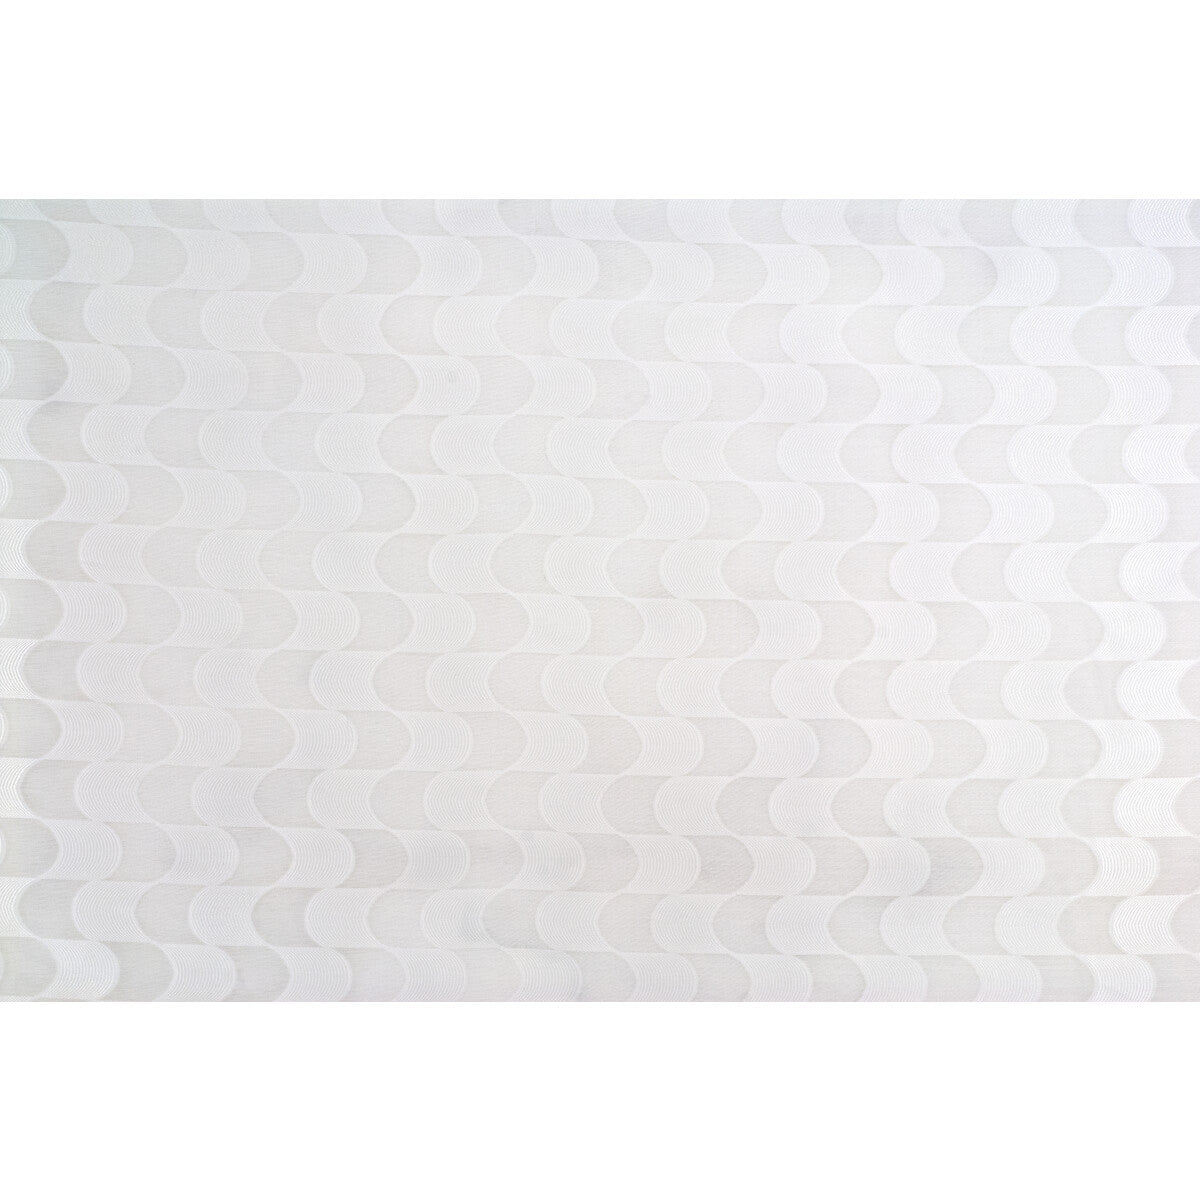 Kravet Basics fabric in 4304-101 color - pattern 4304.101.0 - by Kravet Basics